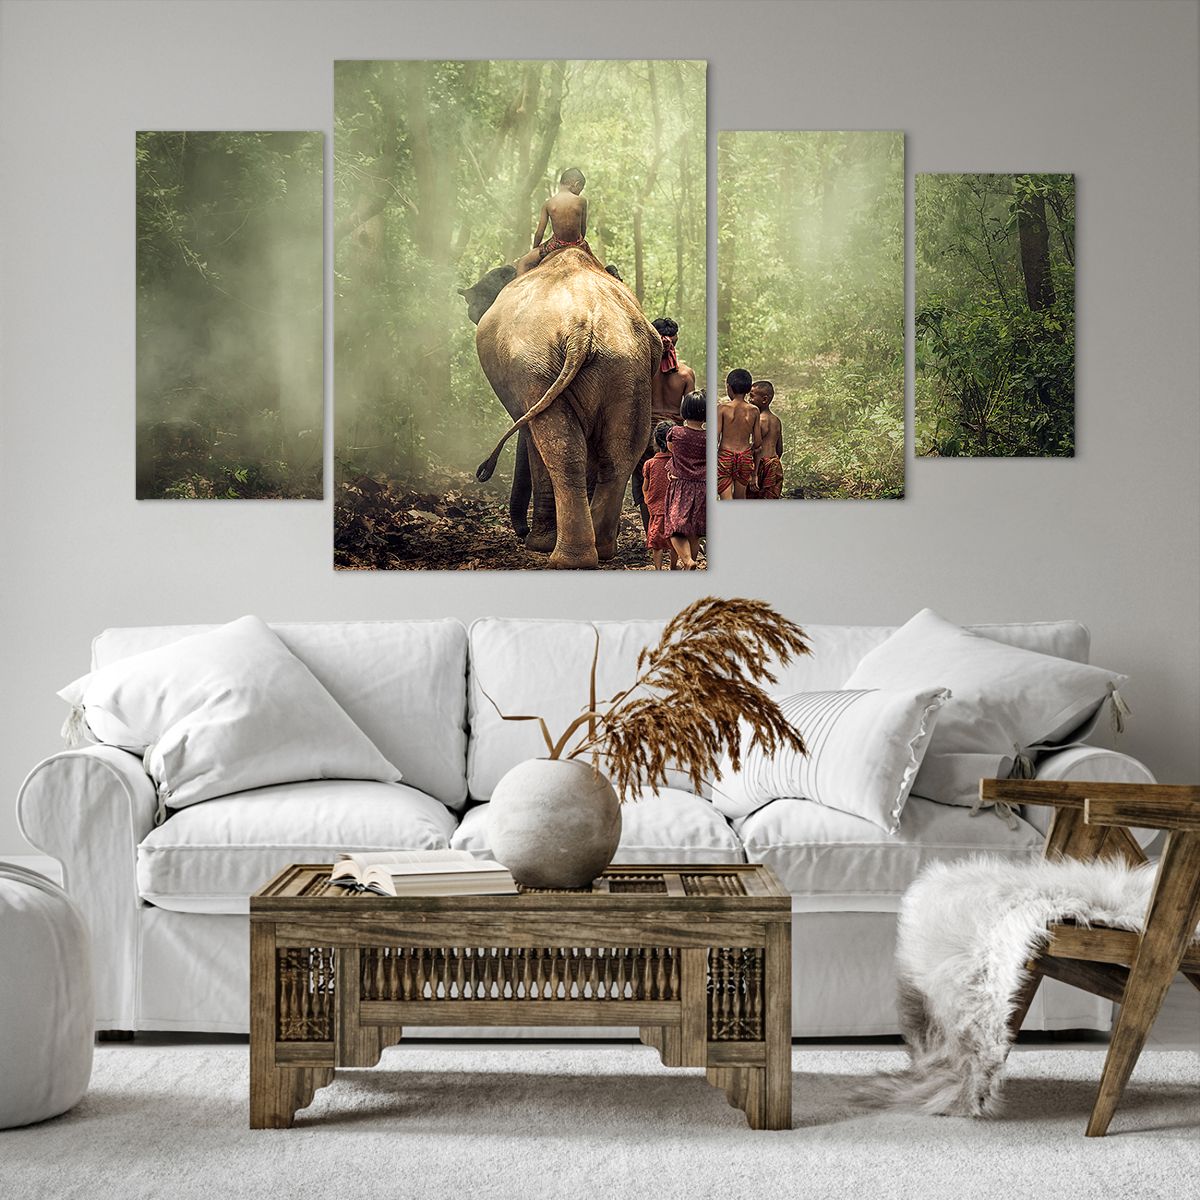 Bild auf Leinwand Landschaft, Bild auf Leinwand Elefant, Bild auf Leinwand Urwald, Bild auf Leinwand Asien, Bild auf Leinwand Thailand